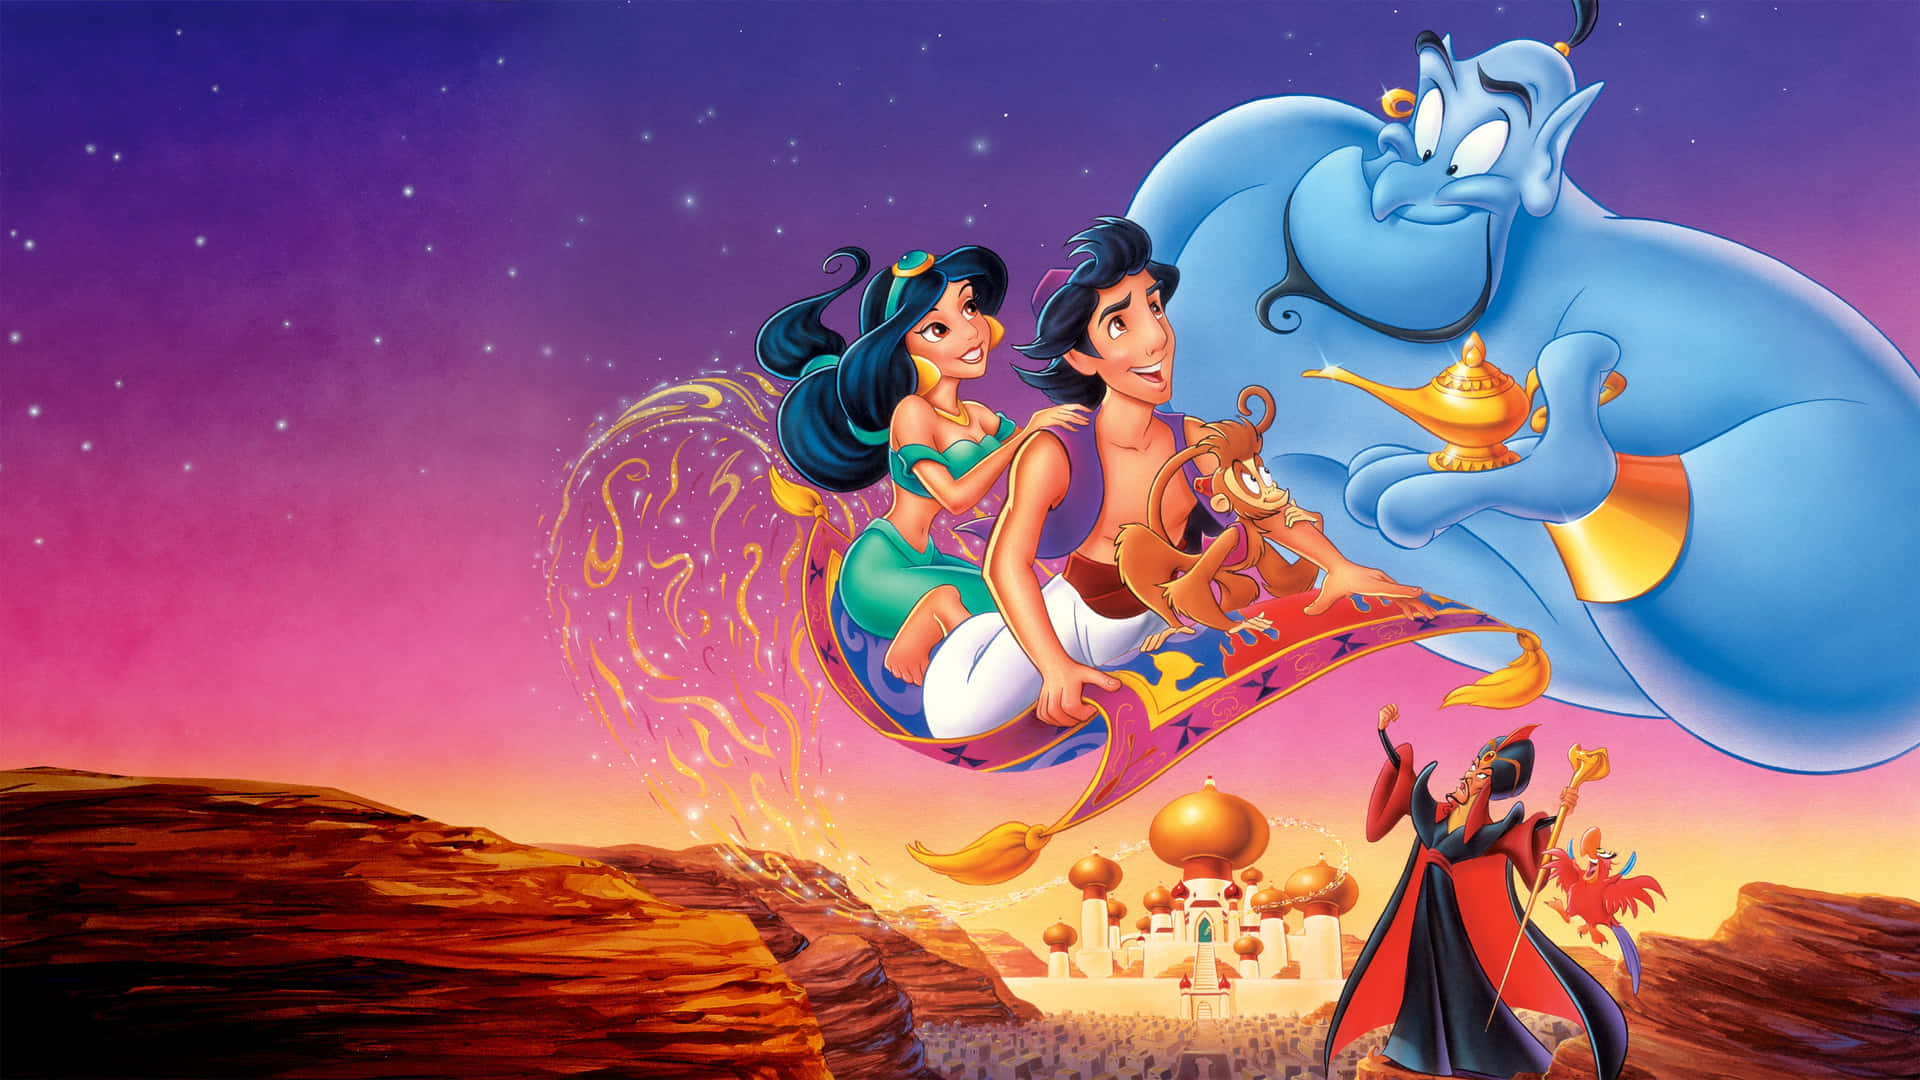 Följmed Aladdin Och Prinsessan Jasmine På Ett Magiskt Äventyr!